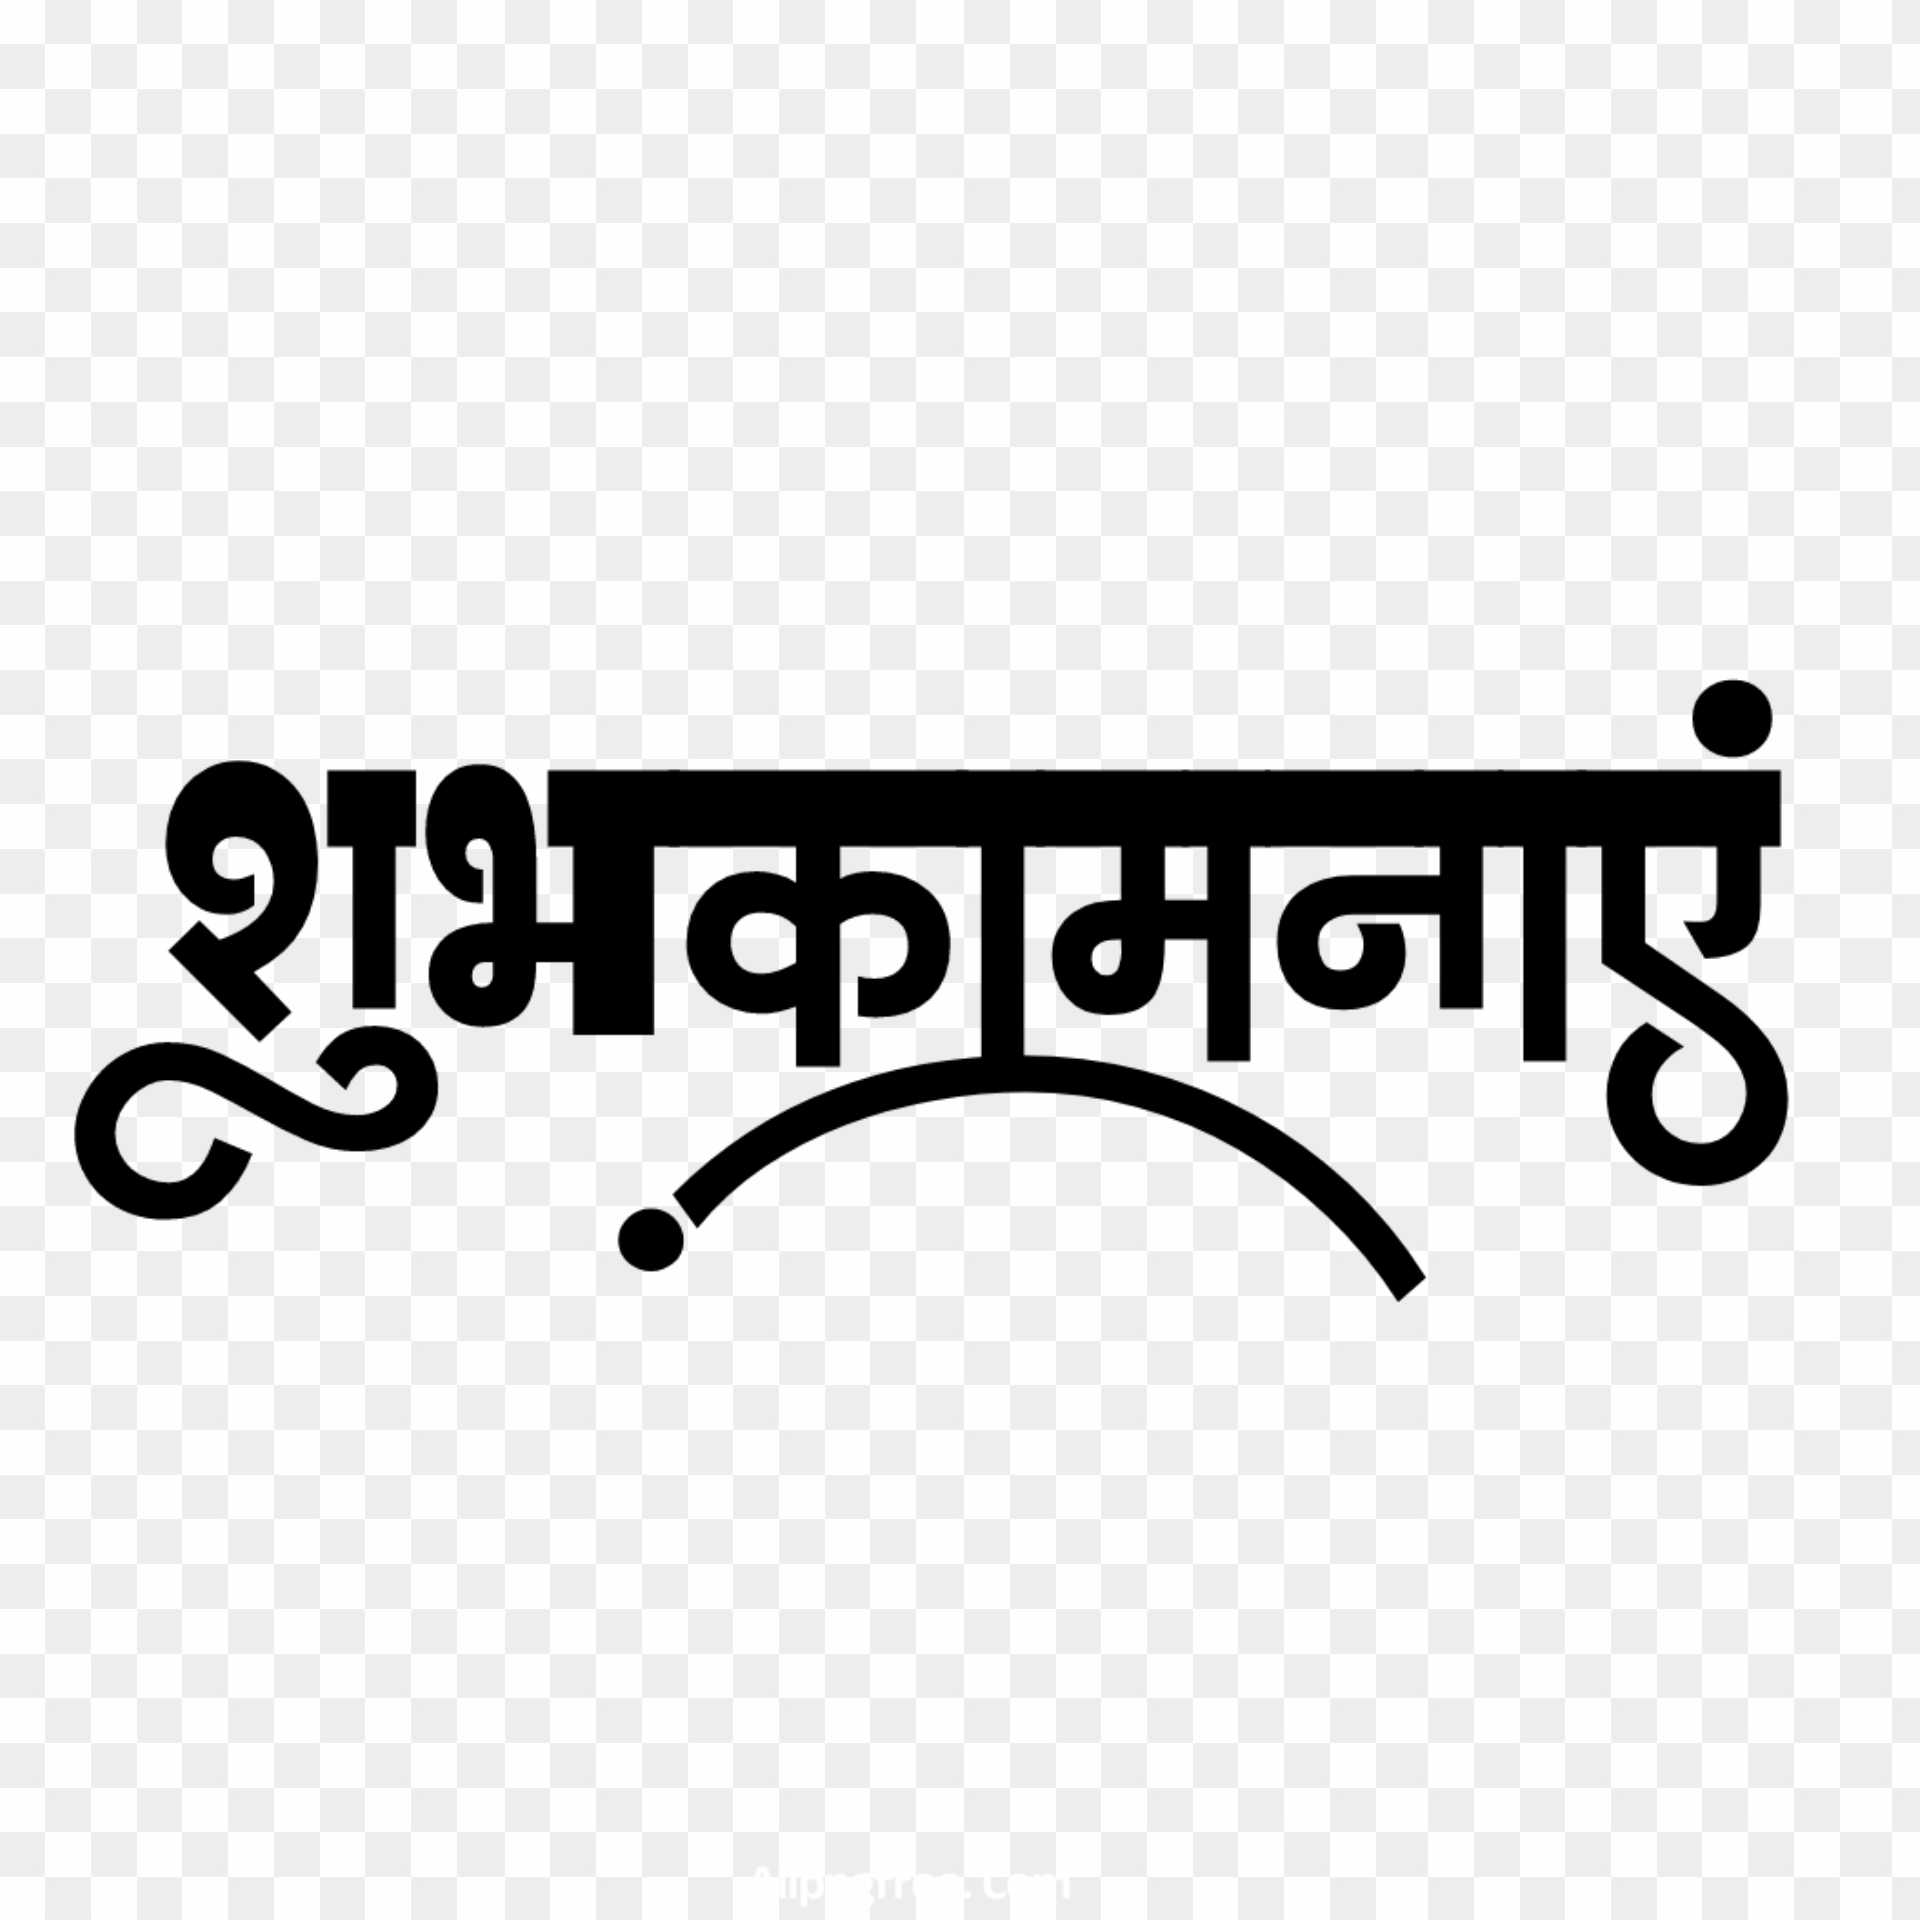 Shubhkamnaen Hindi text PNG images 